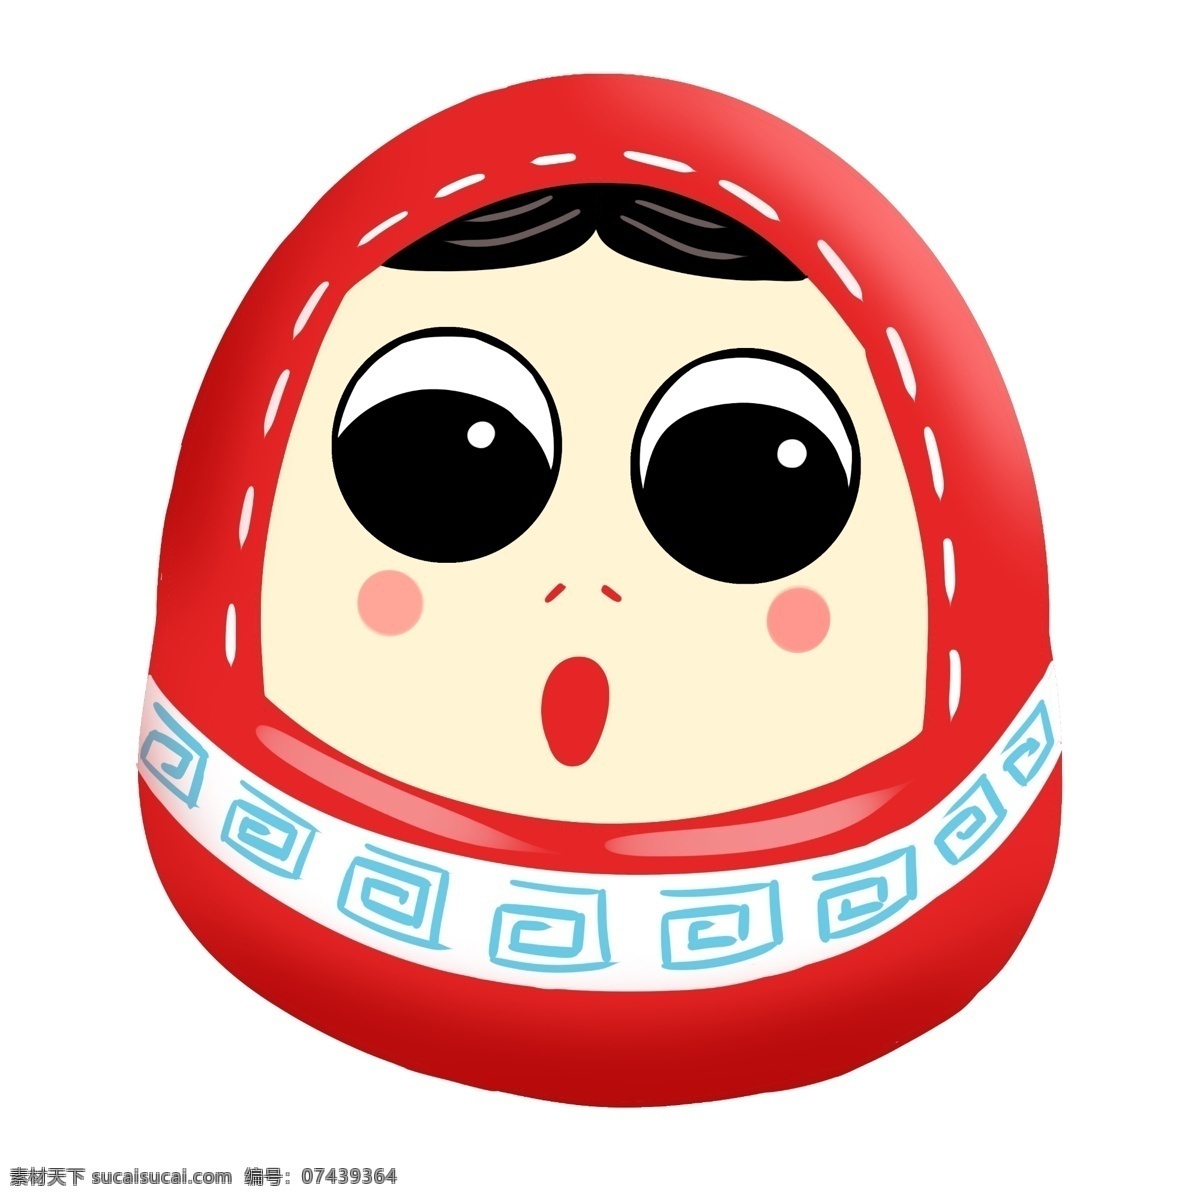 红色 脸谱 日本 插画 红色的脸谱 卡通插画 日本插画 日本脸谱 脸谱插画 日本玩具 可爱的脸谱